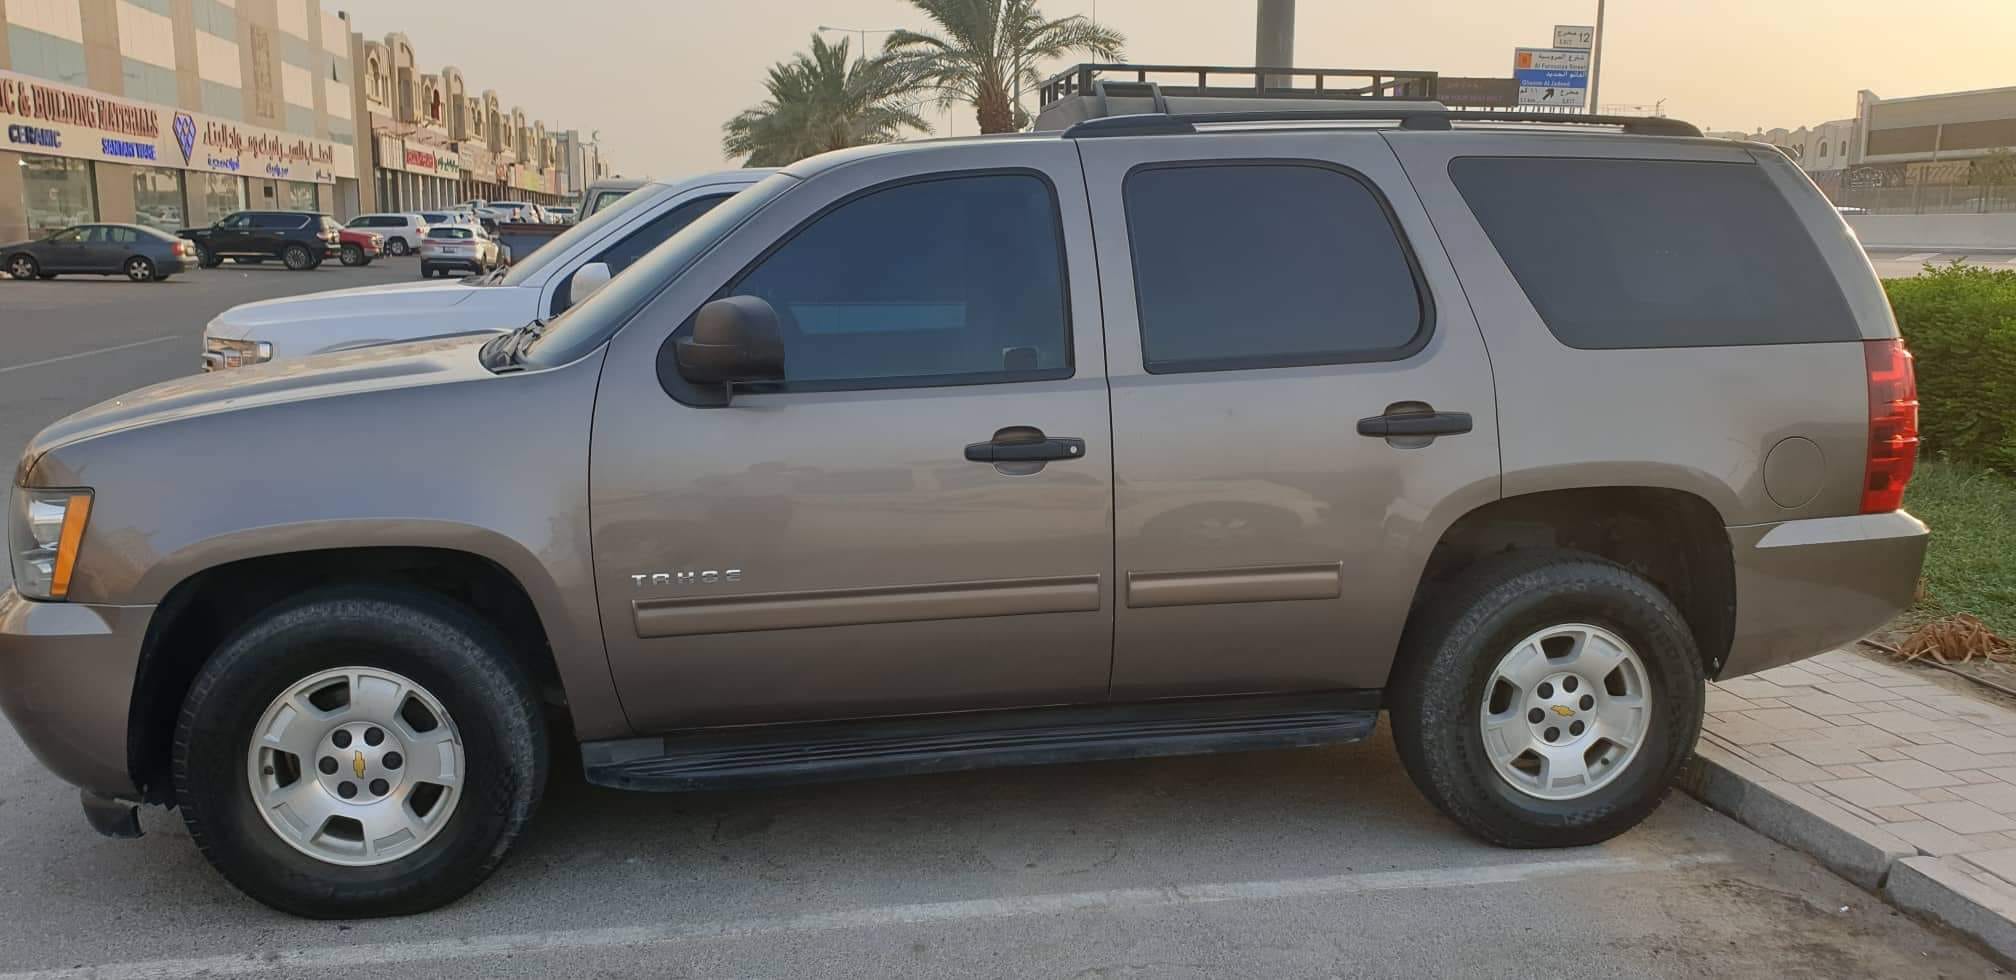 سياره مستعملة للبيع في قطر شيفروليه تاهو 2012